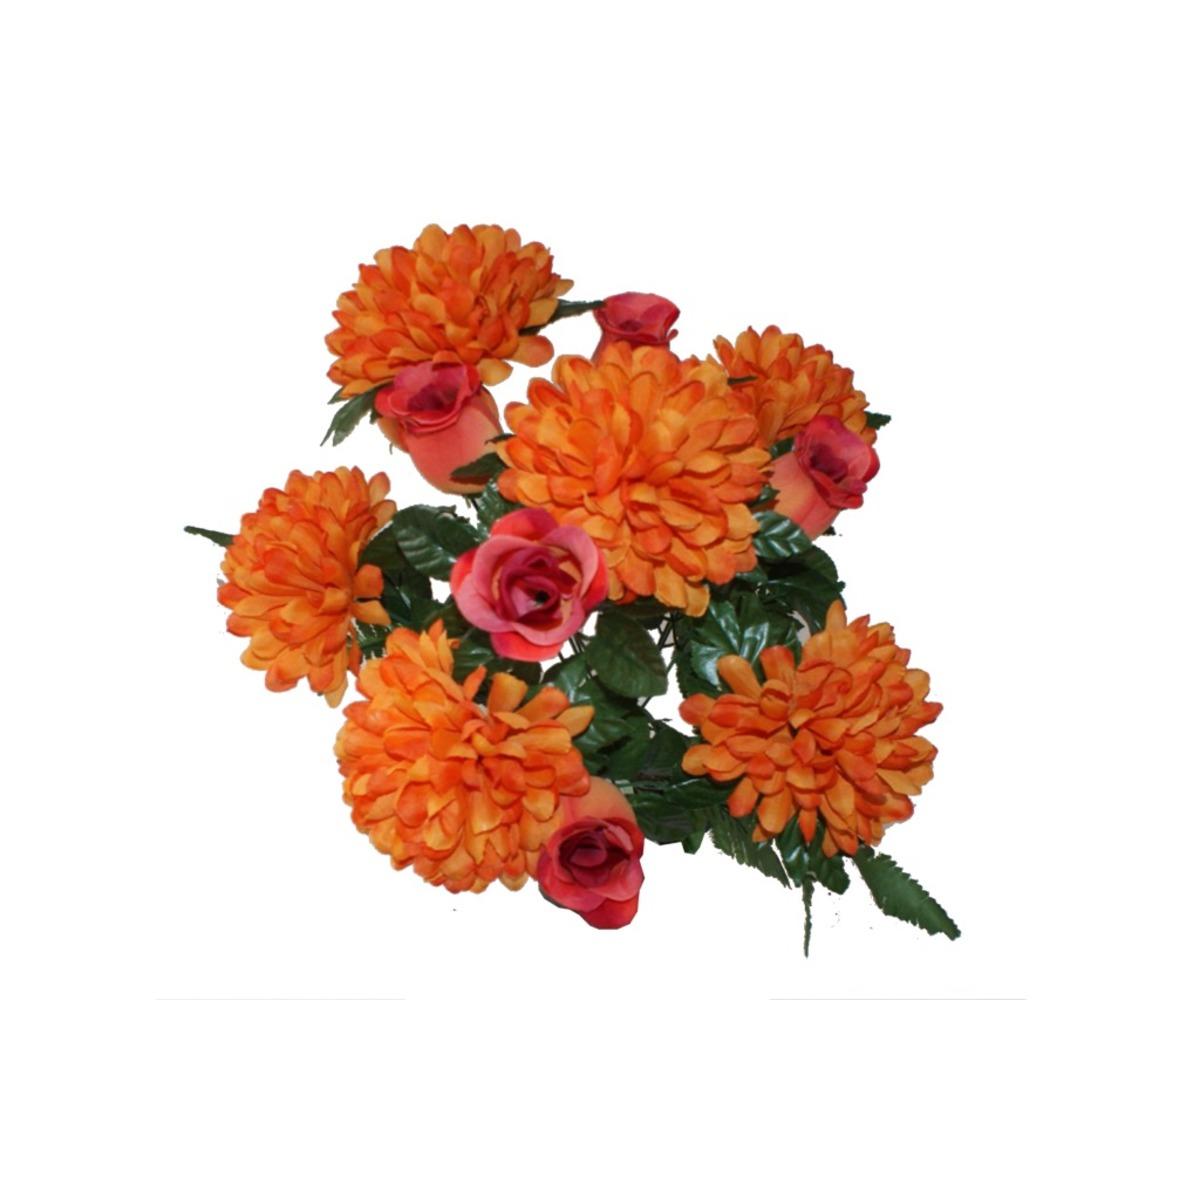 Piquet 12 roses + chrysanthèmes - Hauteur 50 cm - orange feu